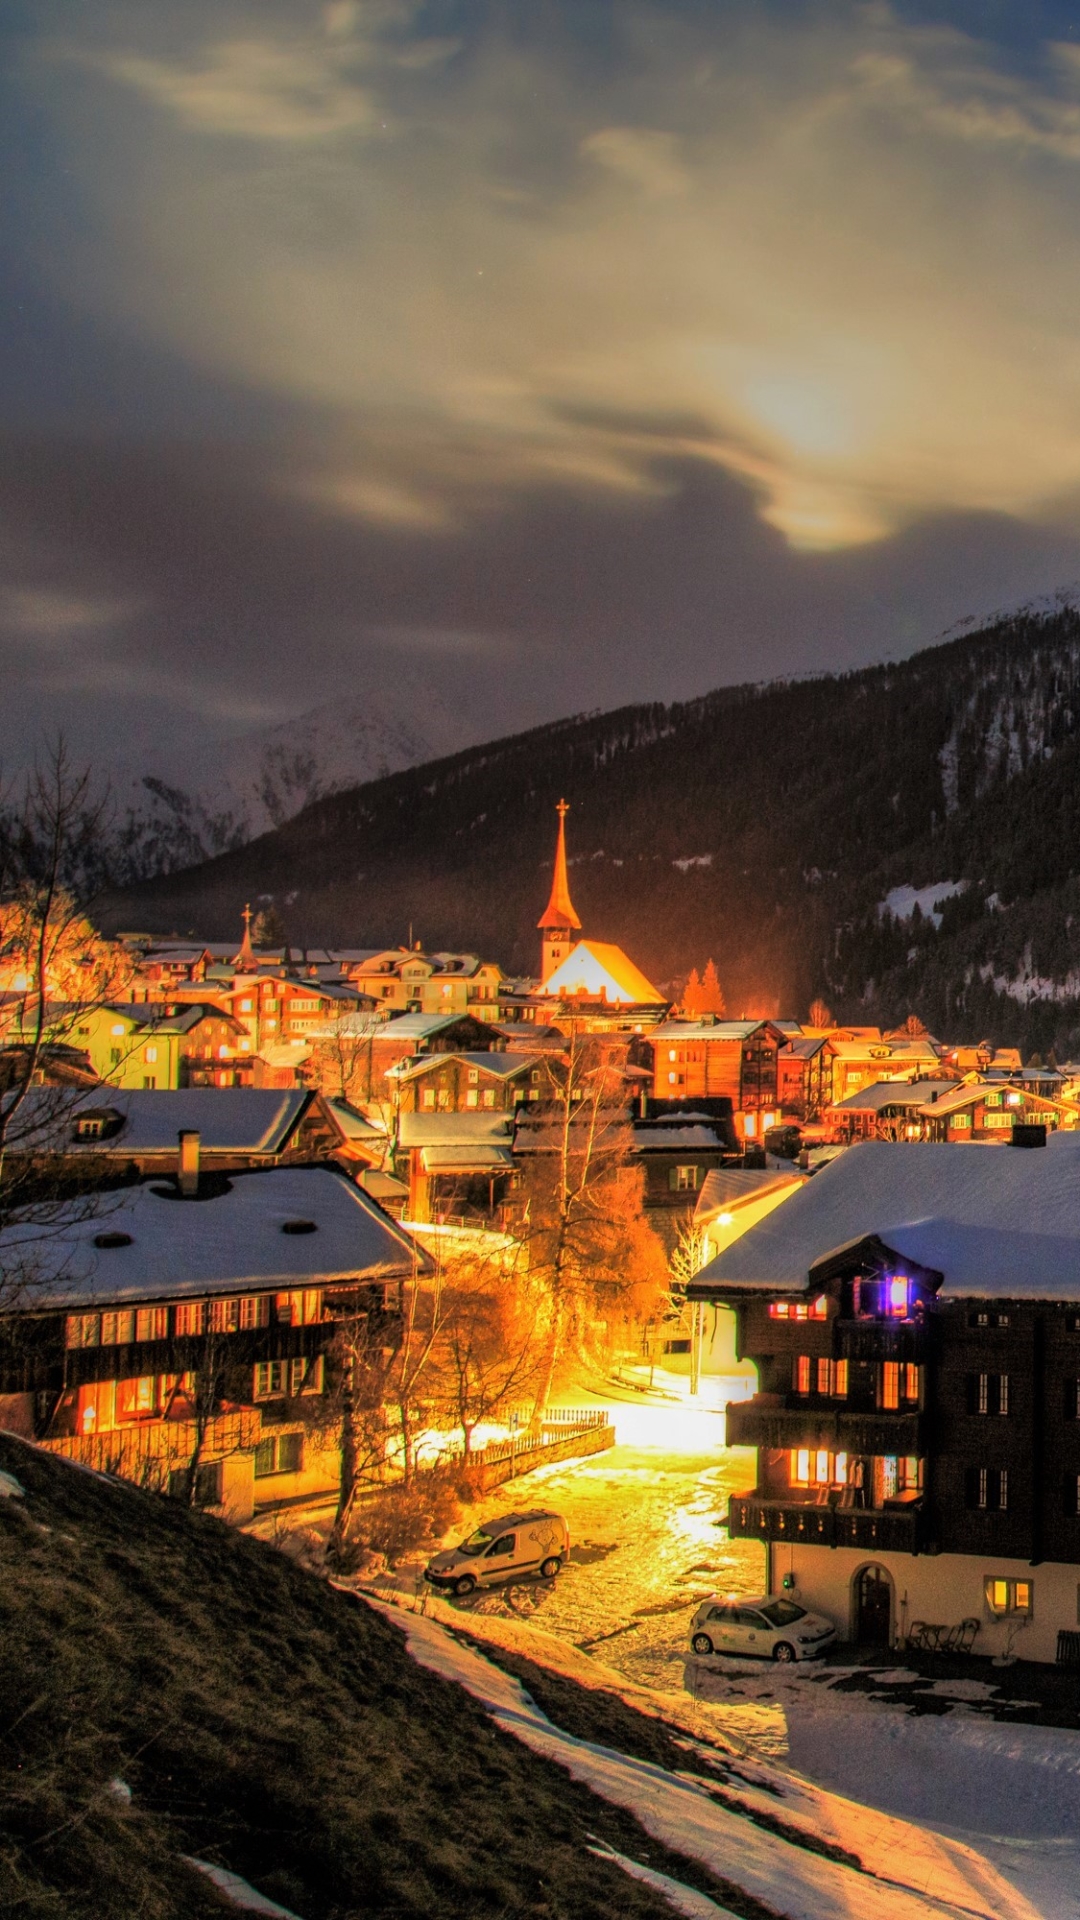 Winter Village in Switzerland